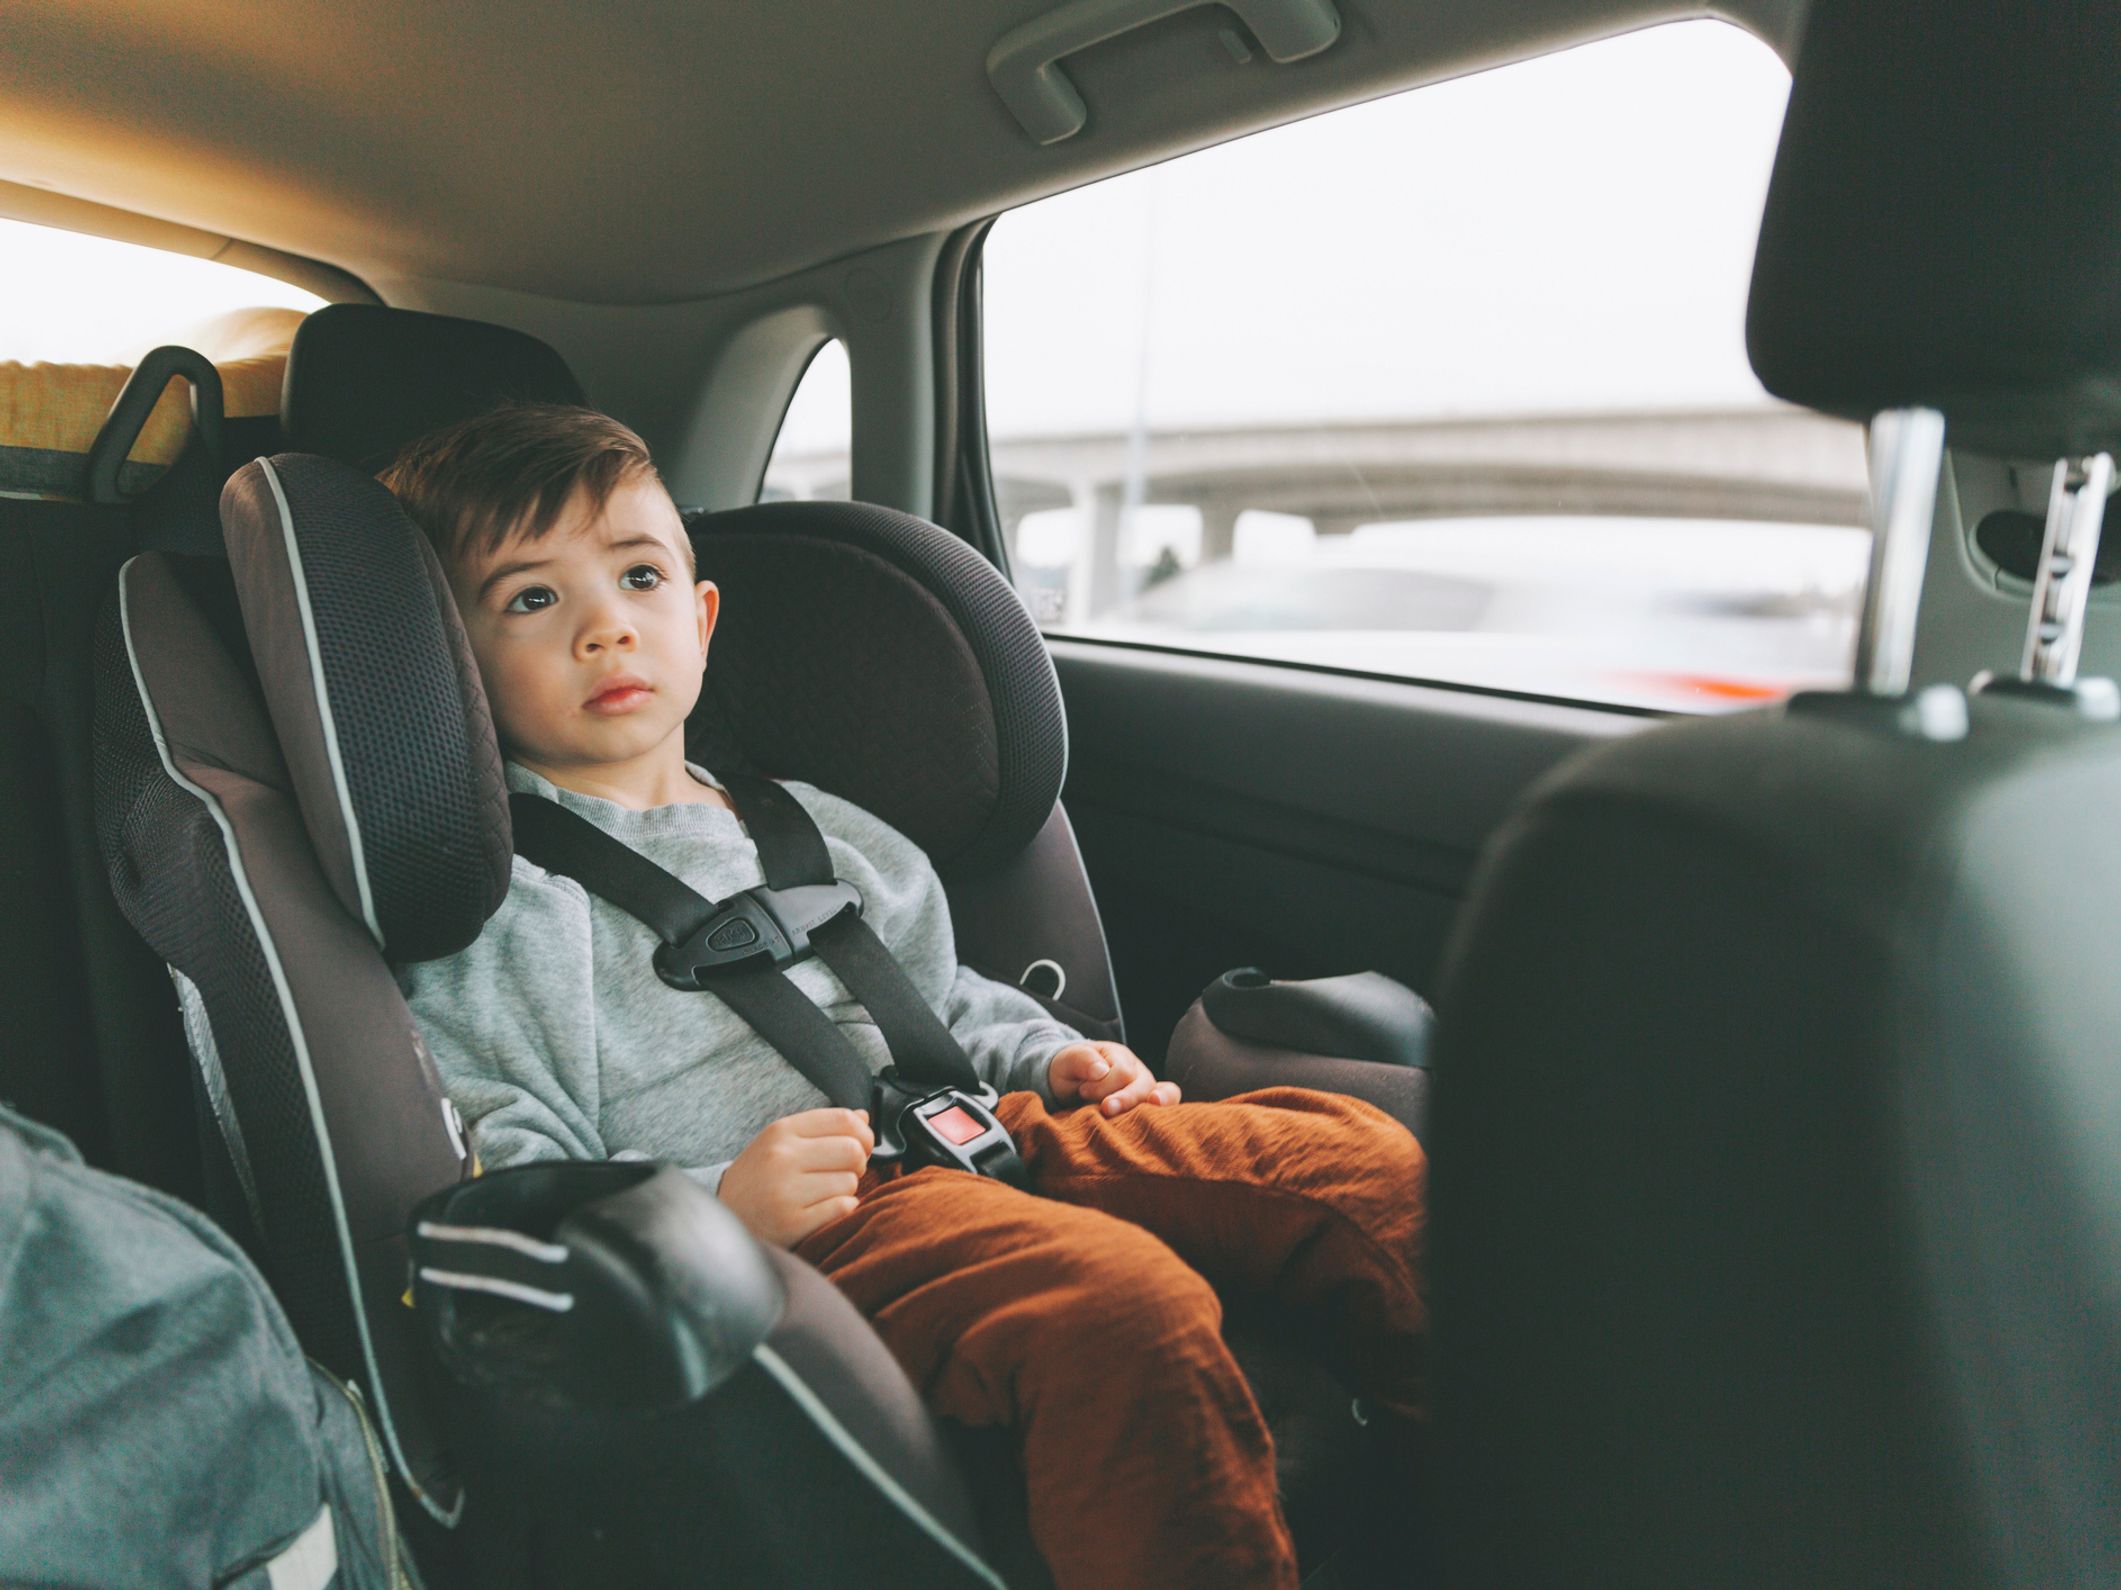 Le guide sur les sièges auto pour enfant, GoStudent